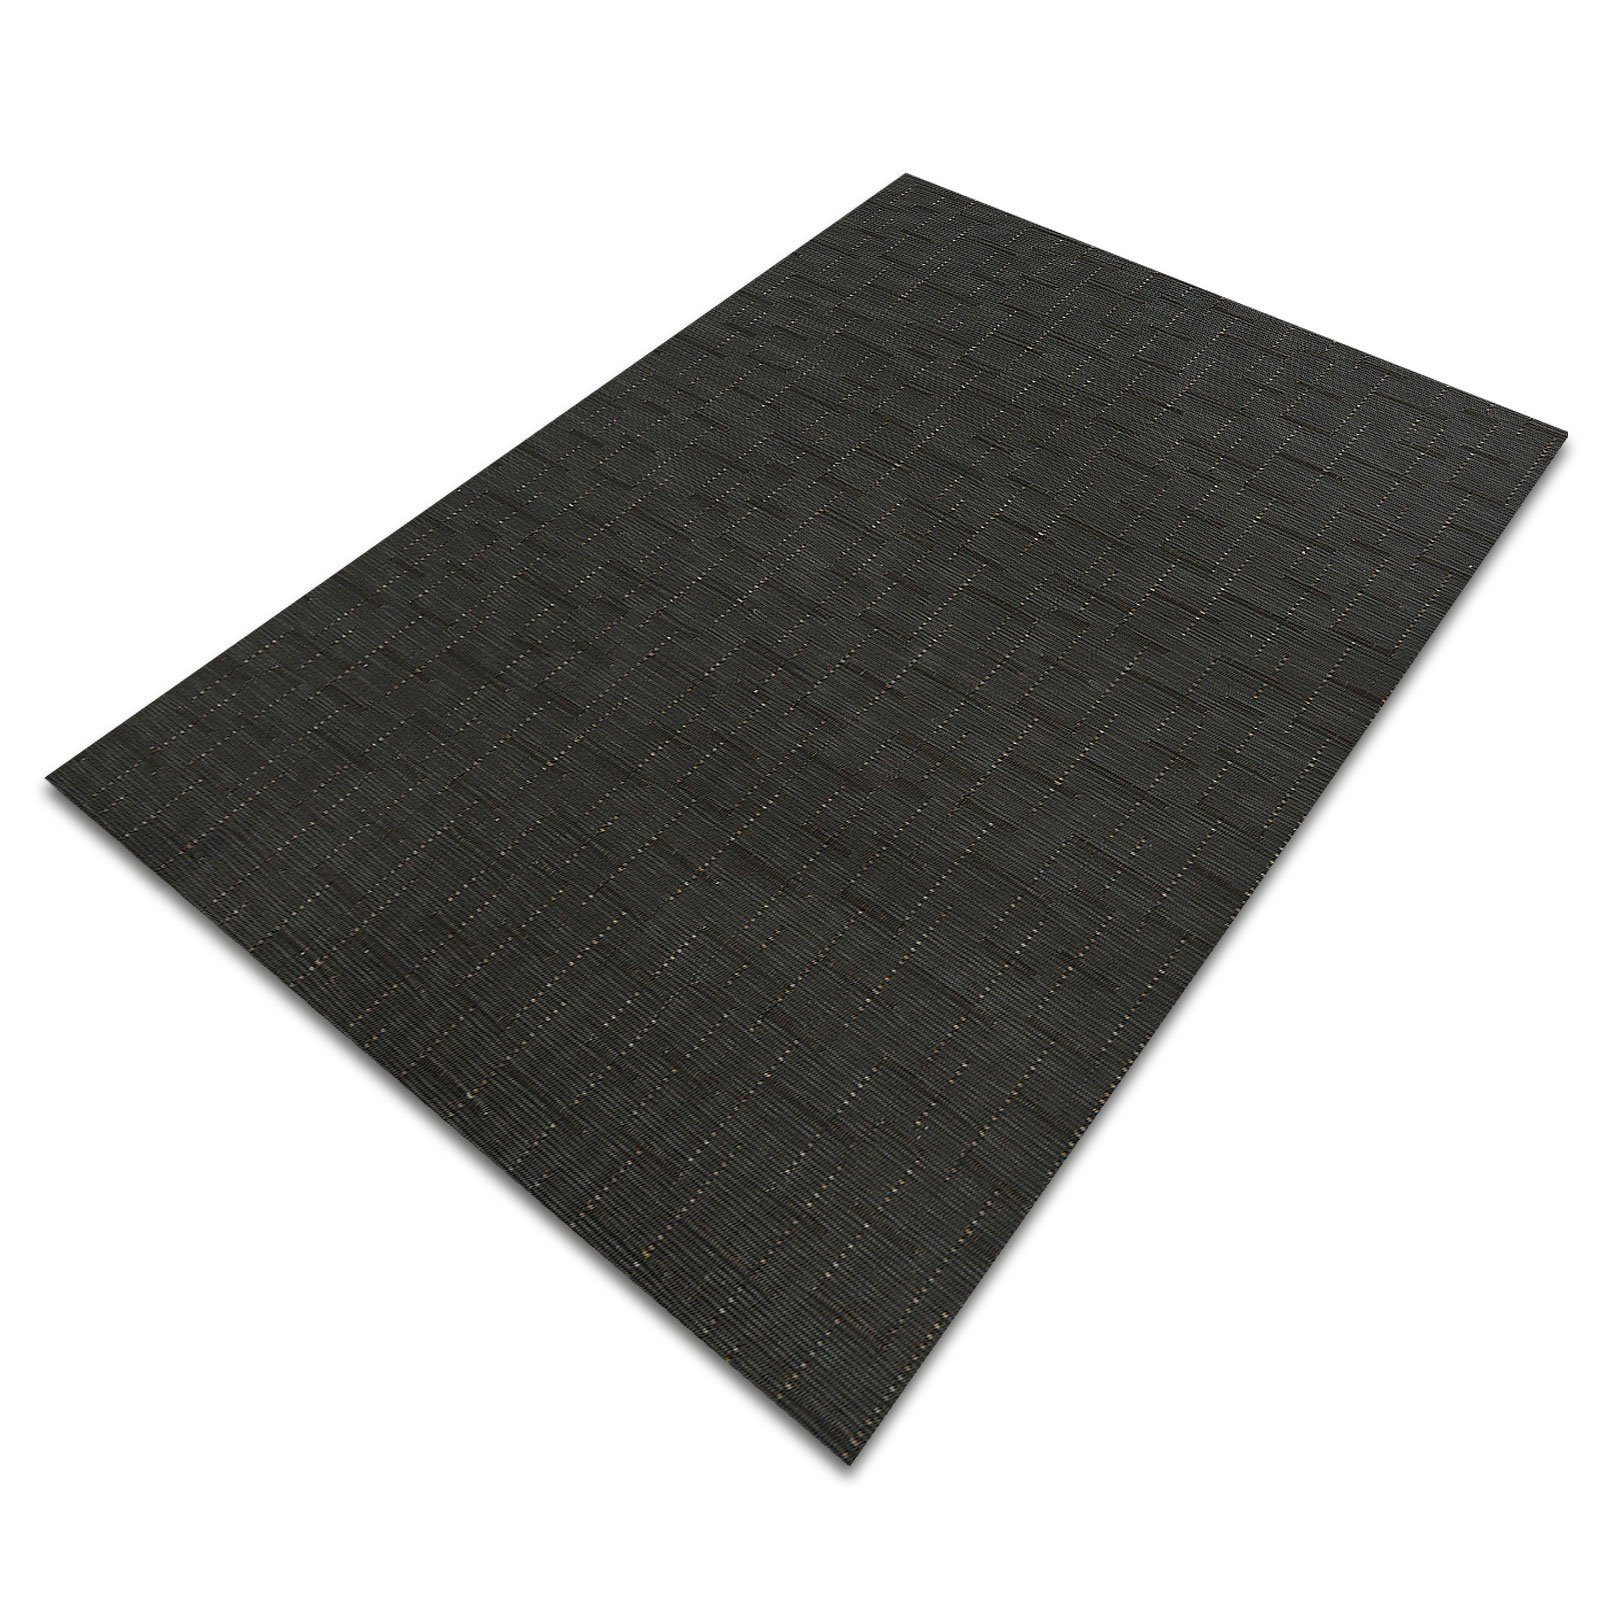 Vinylteppich Ferrara, Teppichläufer erhältlich in vielen Größen, Teppichboden, casa pura, rechteckig, für Indoor- & Outdoorbereiche